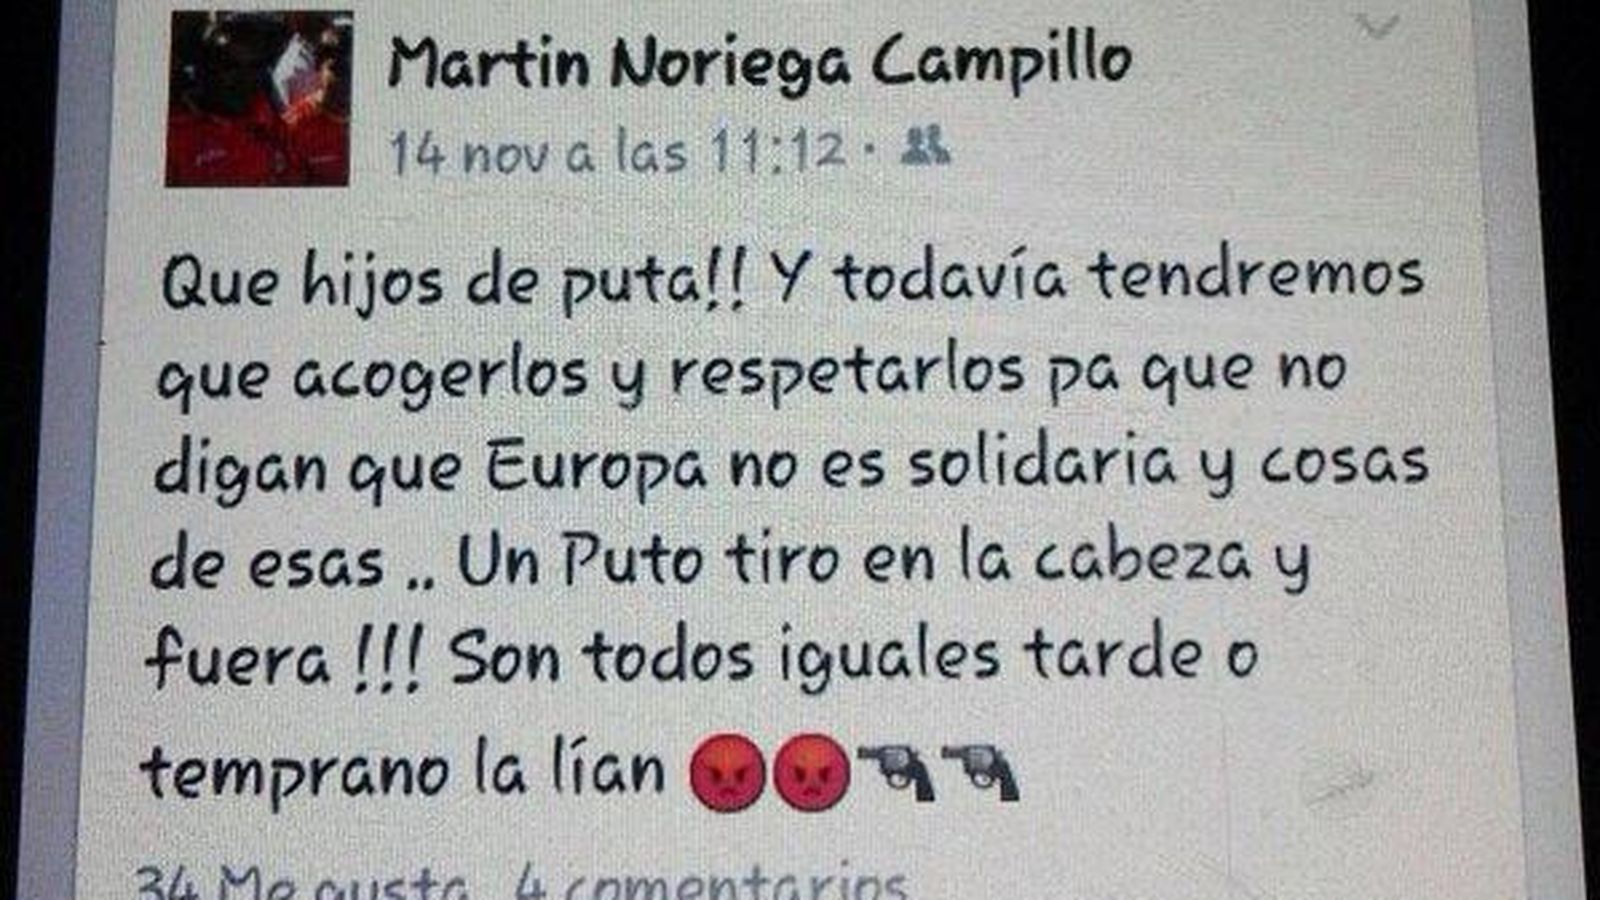 Foto: Captura de pantalla del mensaje publicado en Facebook por Martín Noriega (Twitter/José Sánchez)